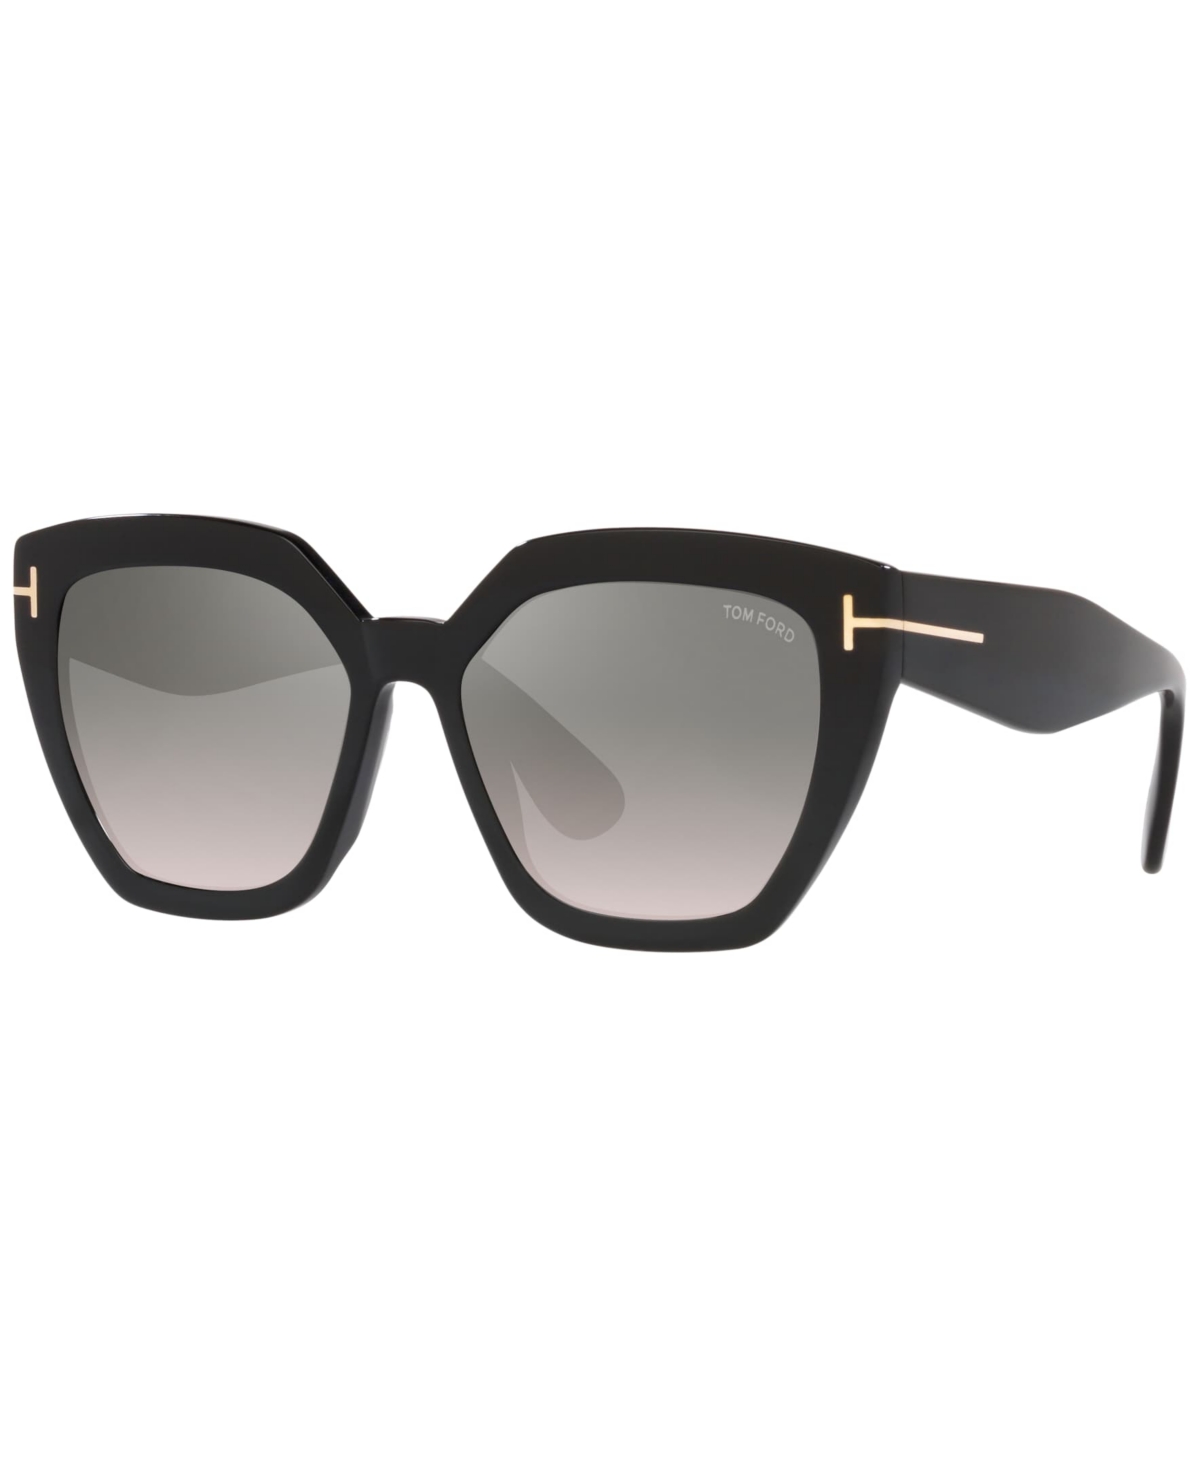 Tom Ford Women's Sunglasses, Ft0939 In Black Shiny